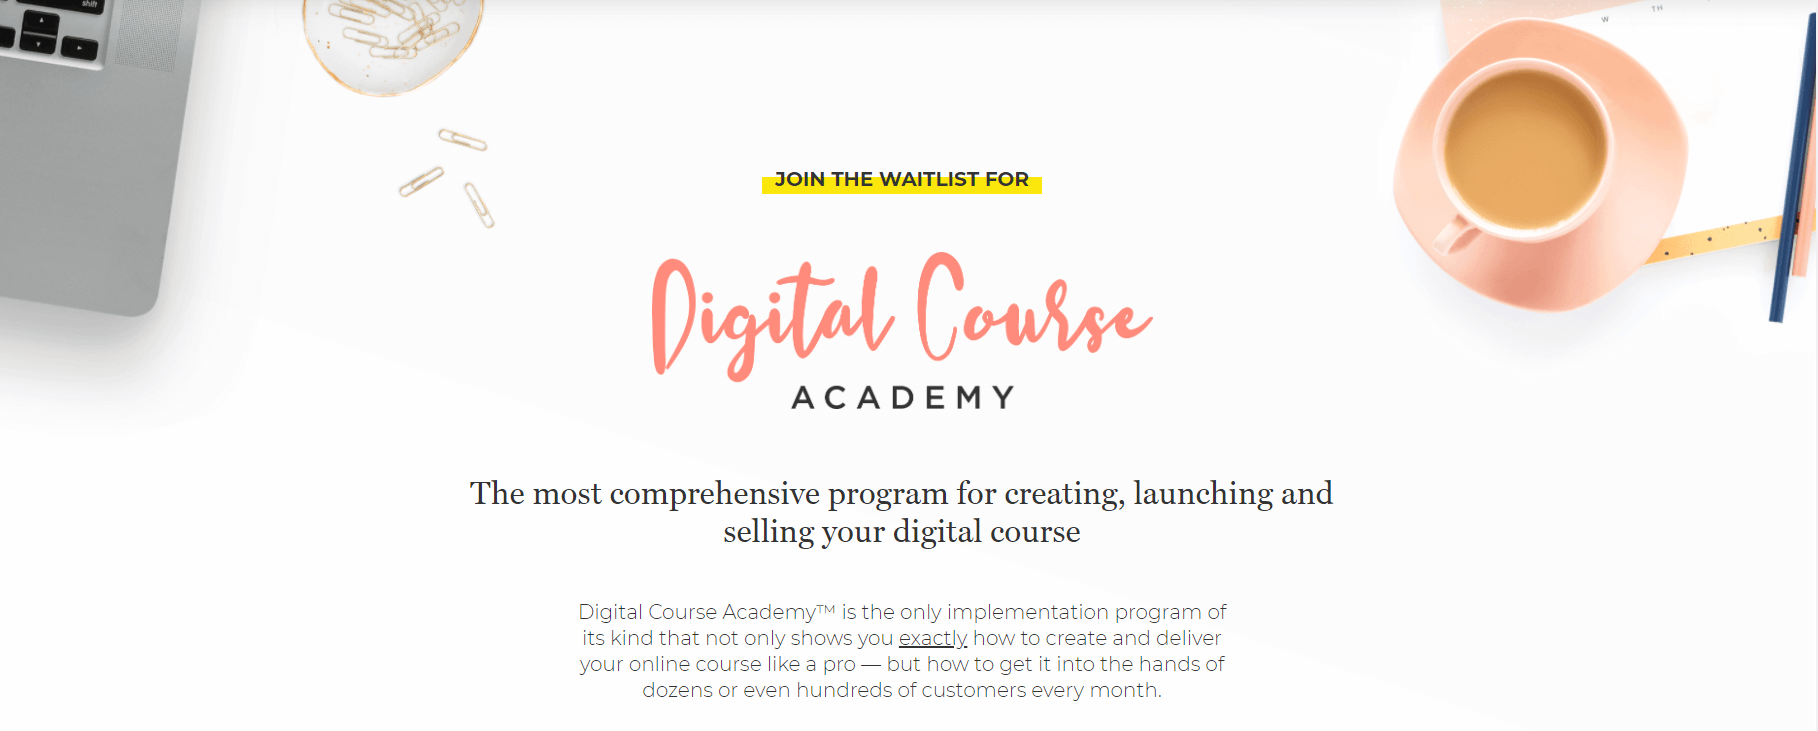 Digital Course Academy Waitlist